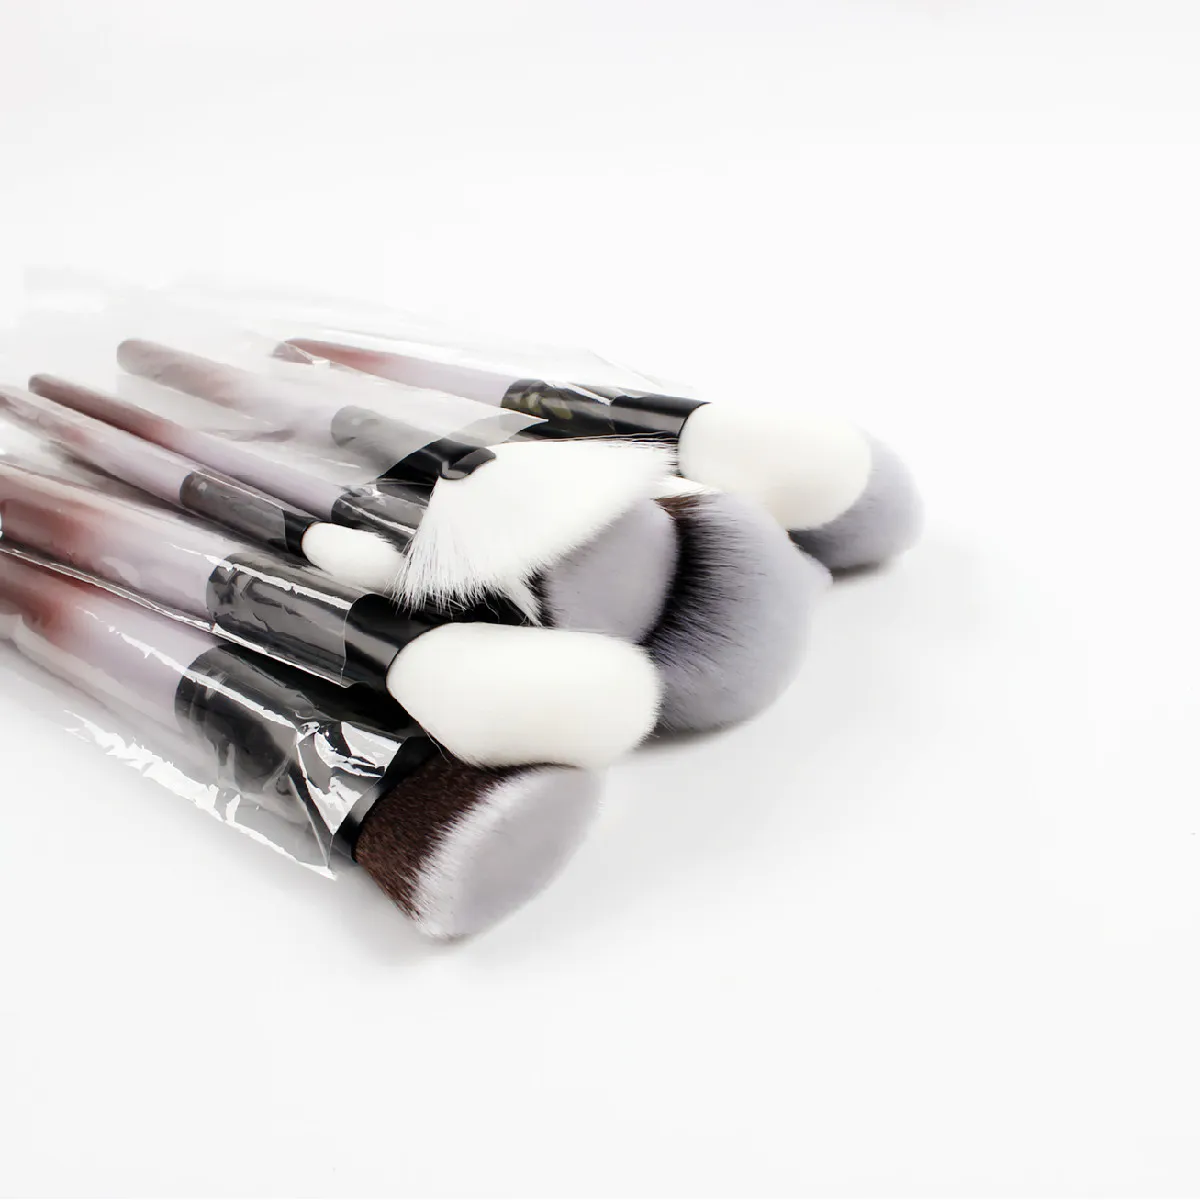 Suprabeauty latest design 18pcs set eye makeup brushes set eye shadow brushes beauty tools hot sale